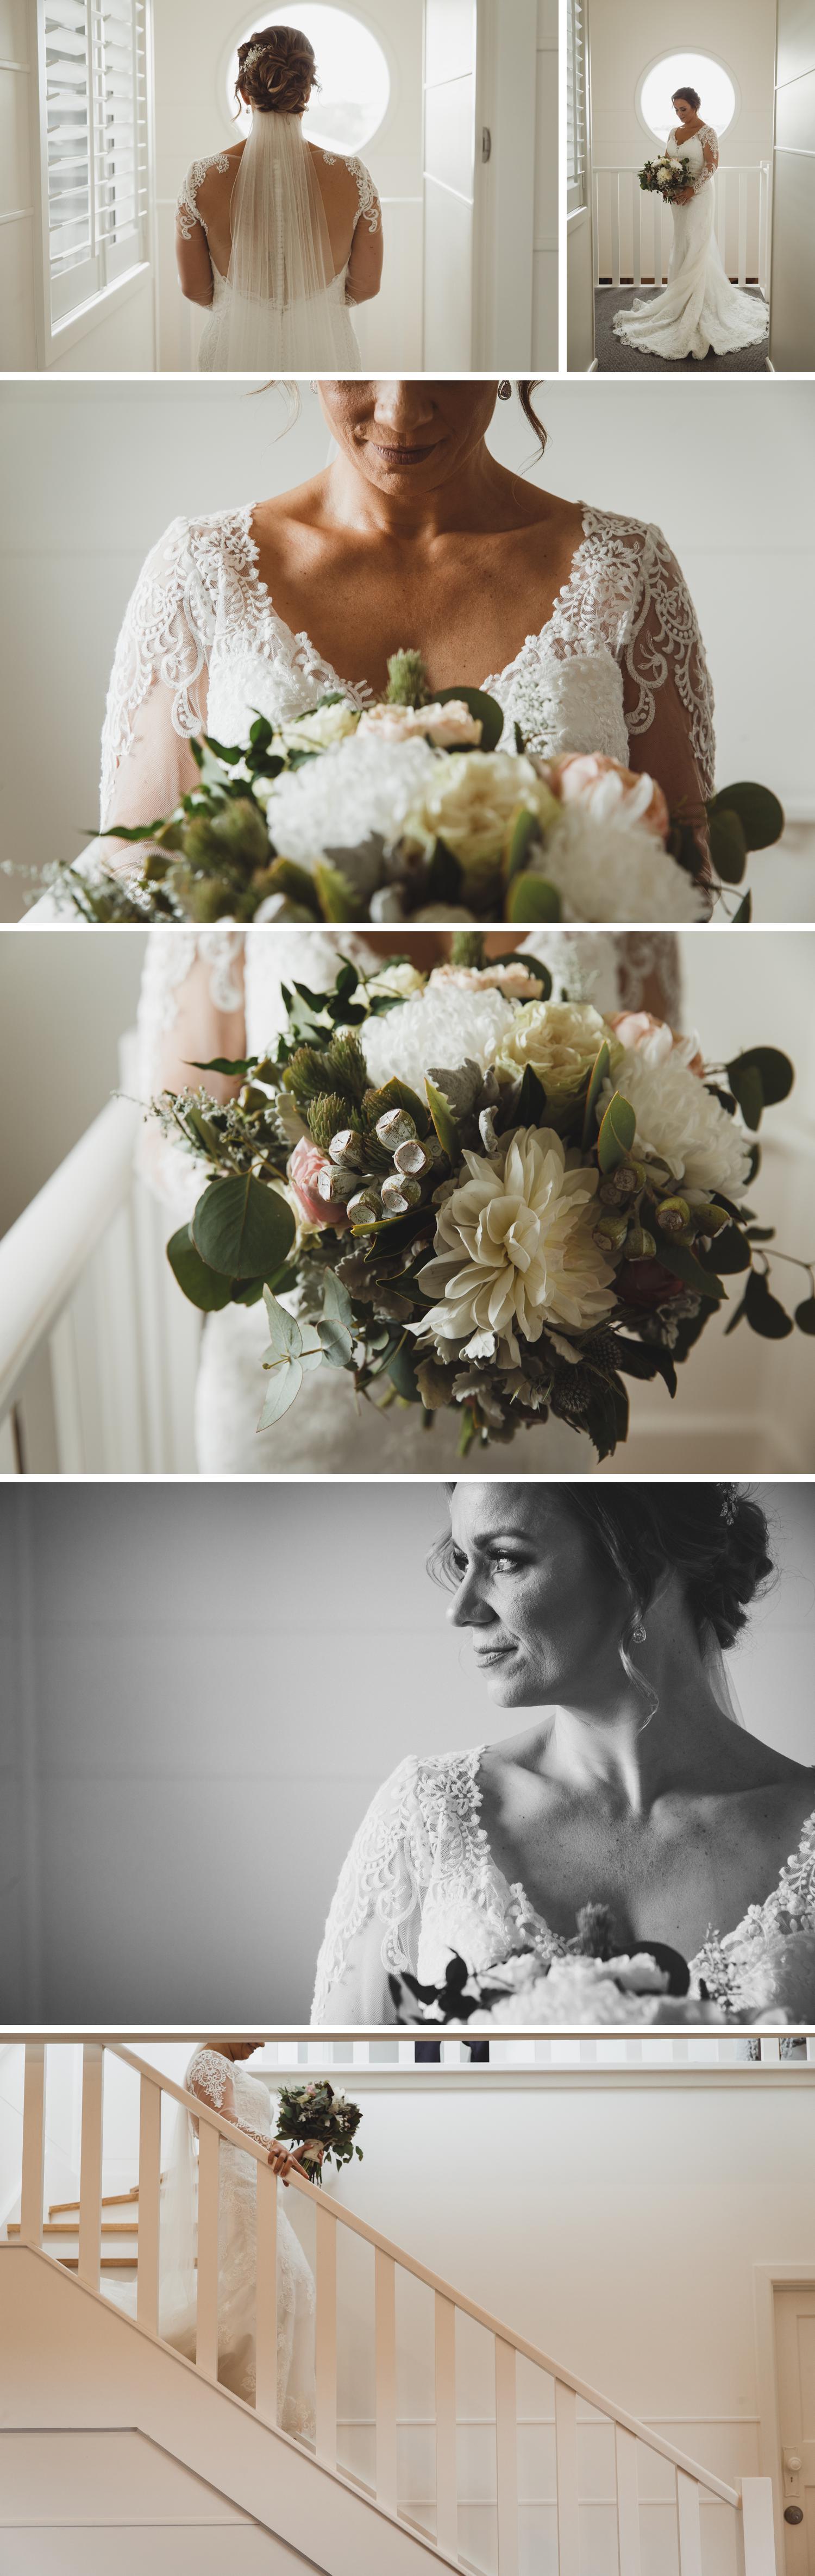 All Smiles Sorrento, Mornington Peninsula Wedding Photography, Videography by Danae Studios